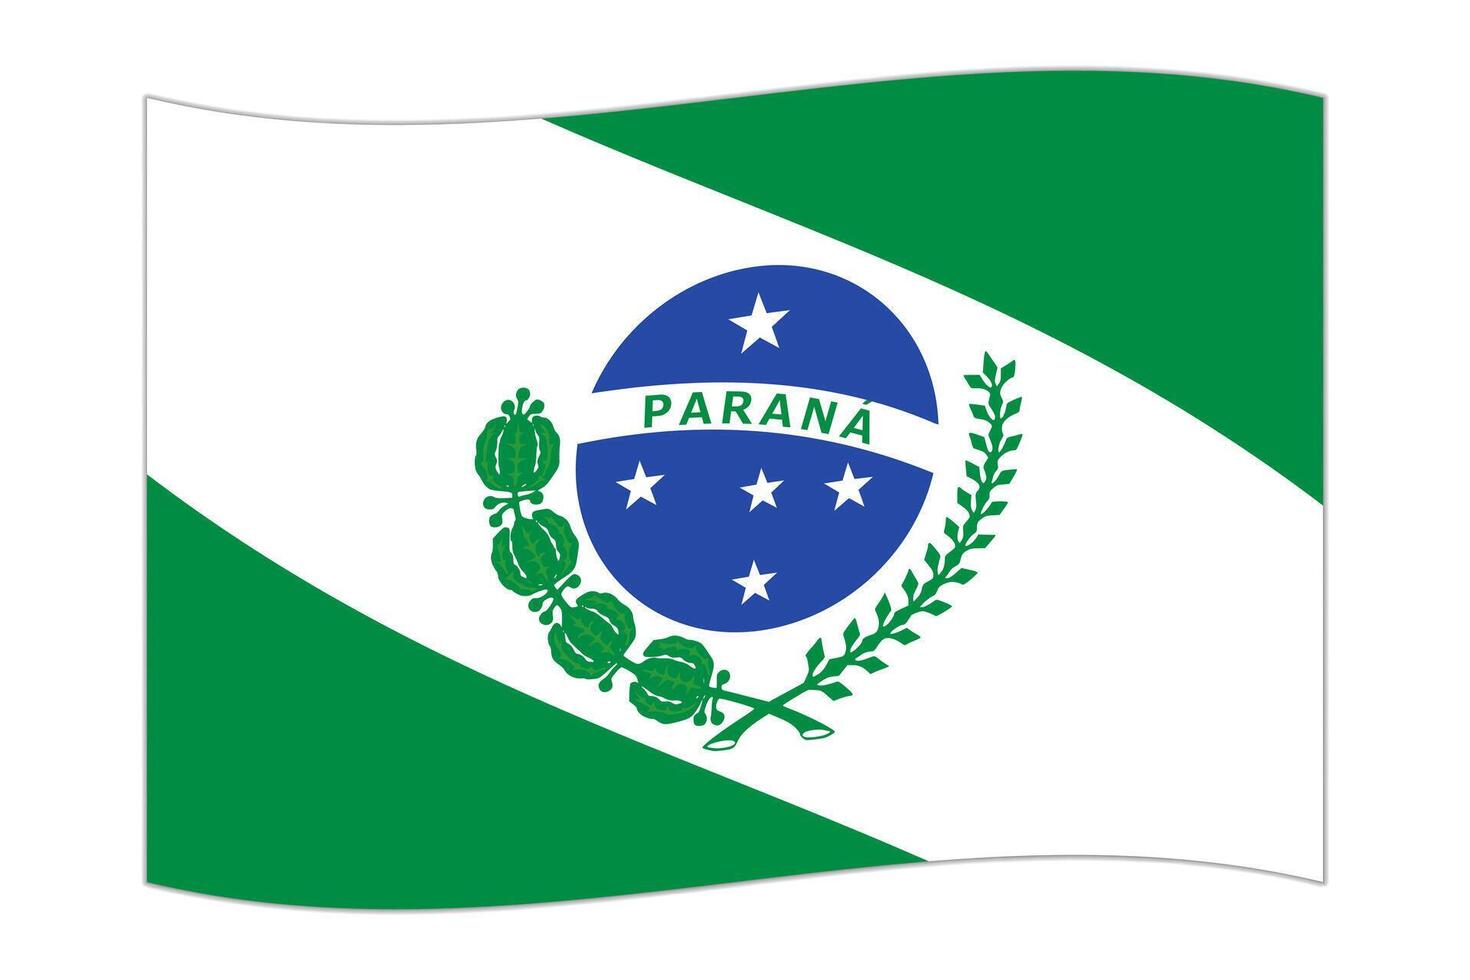 Waving flag of Parana. Vector illustration.